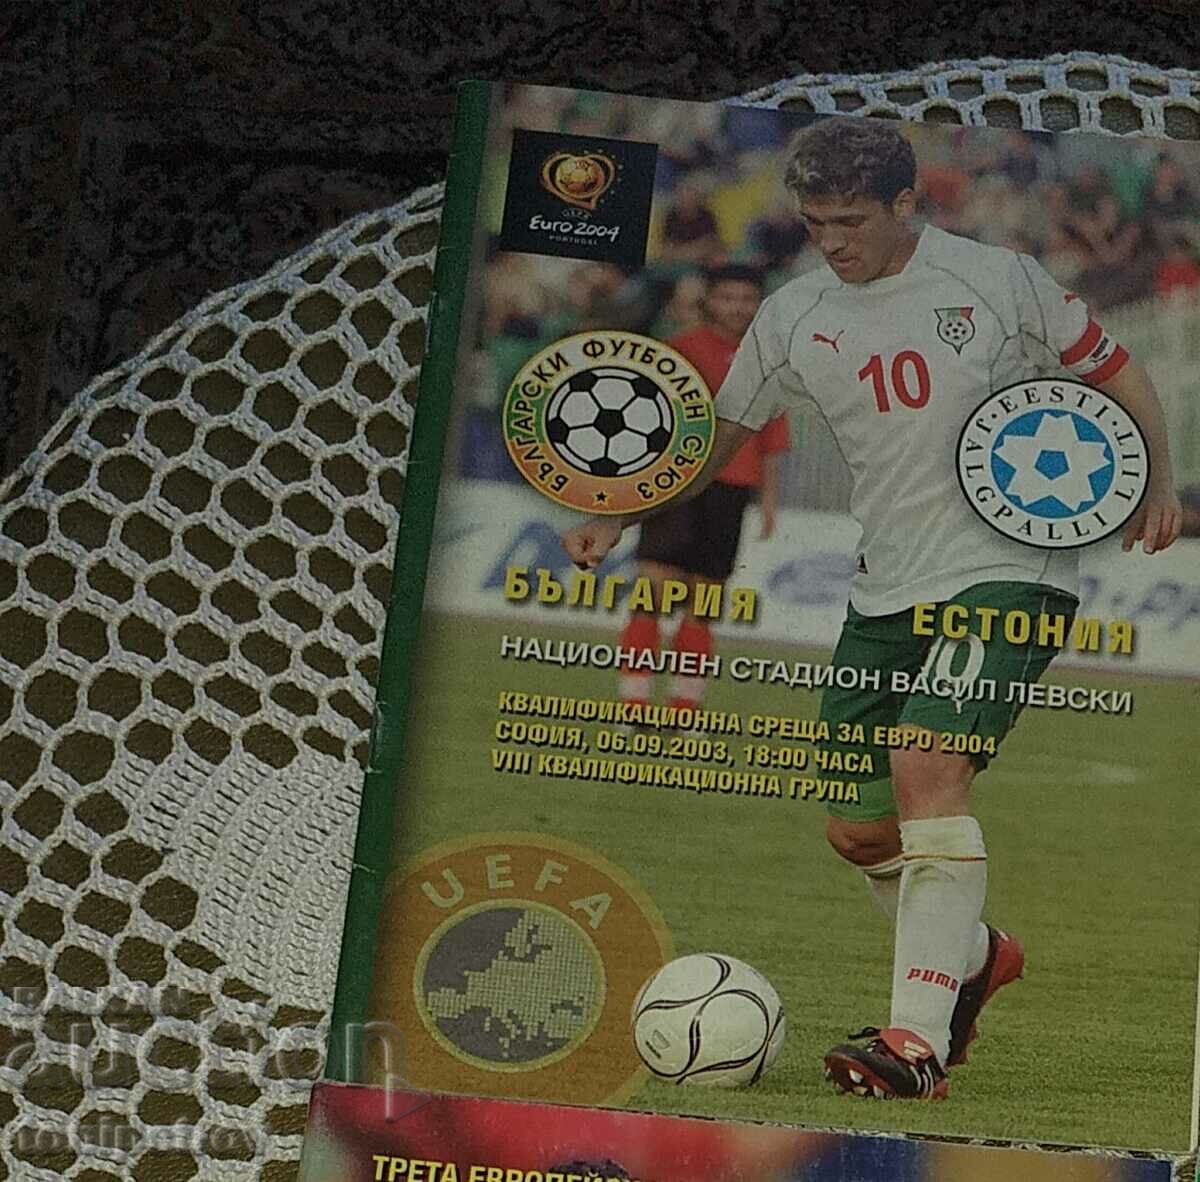 Program de fotbal Bulgaria - Estonia